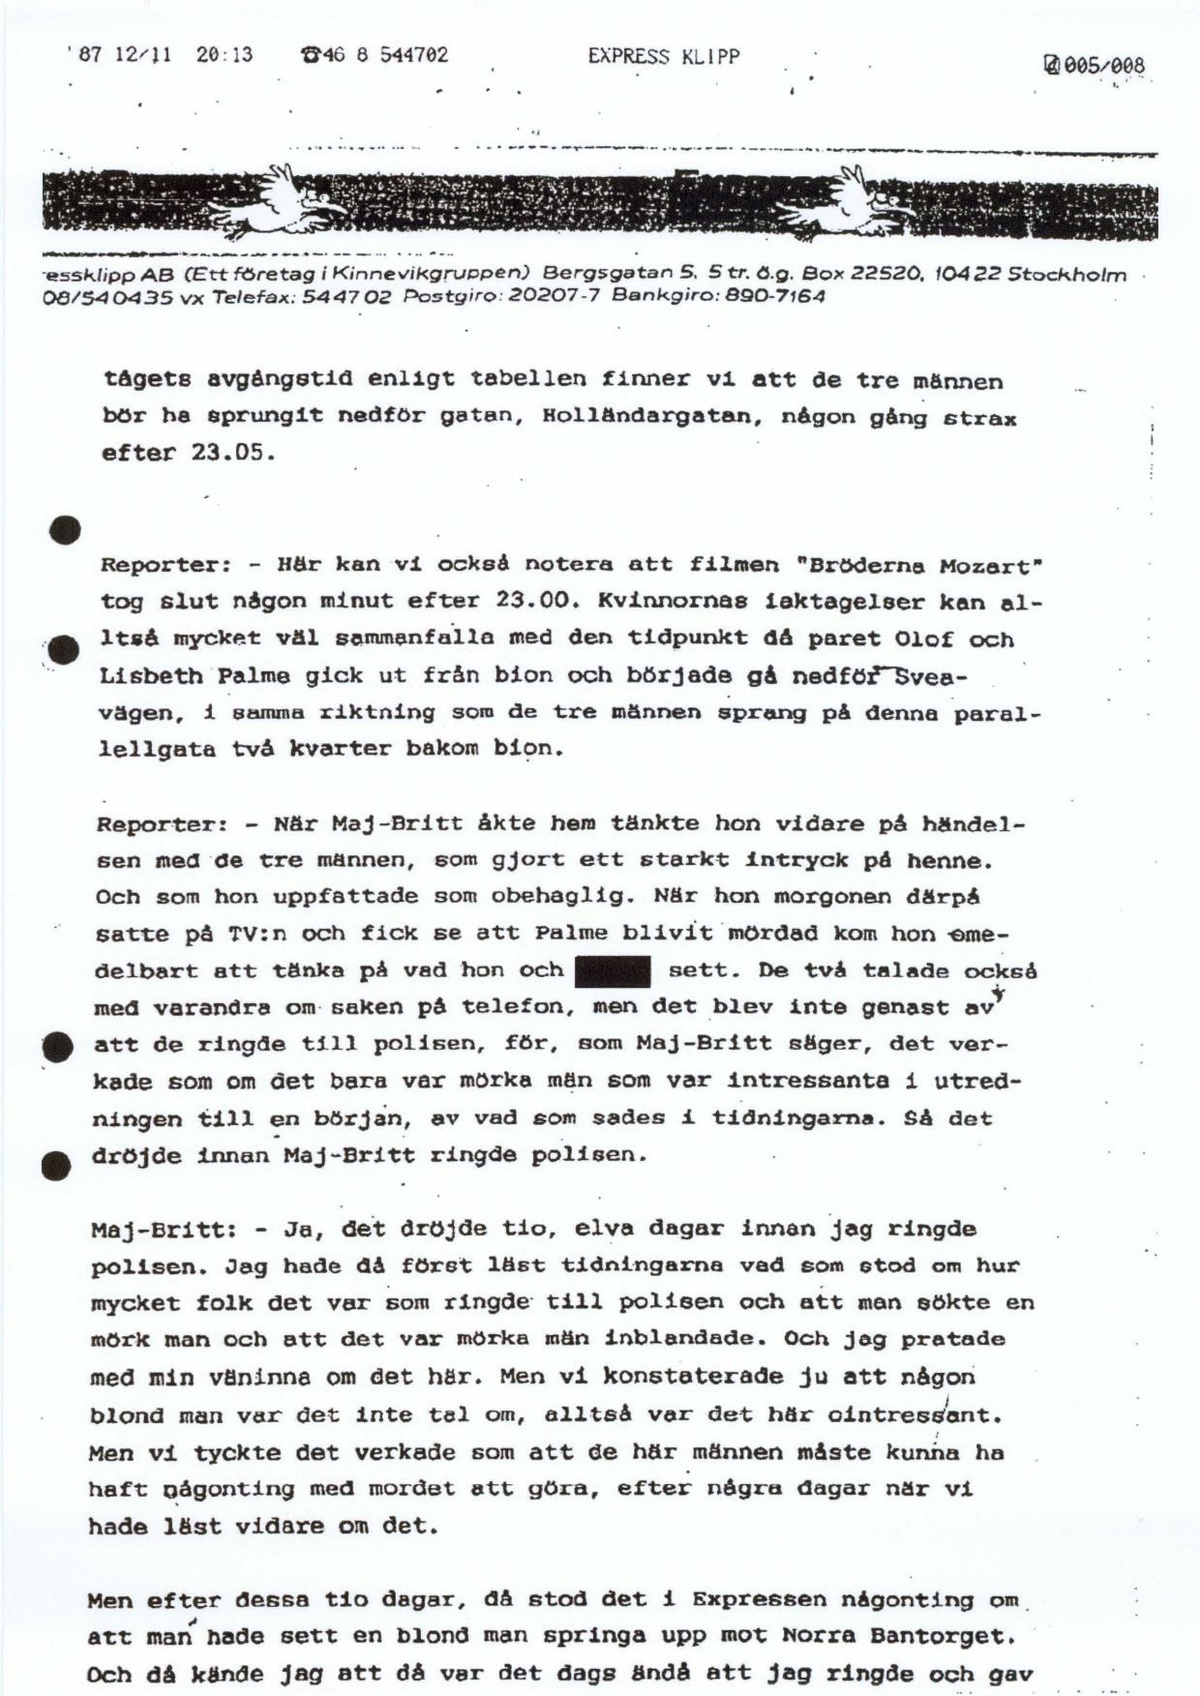 Pol-1987-12-15 EBC7911-00 Transkription av program-i Kanalen P1 1987-12-09 om tre springande män på Holländargatan mordkvällen.pdf